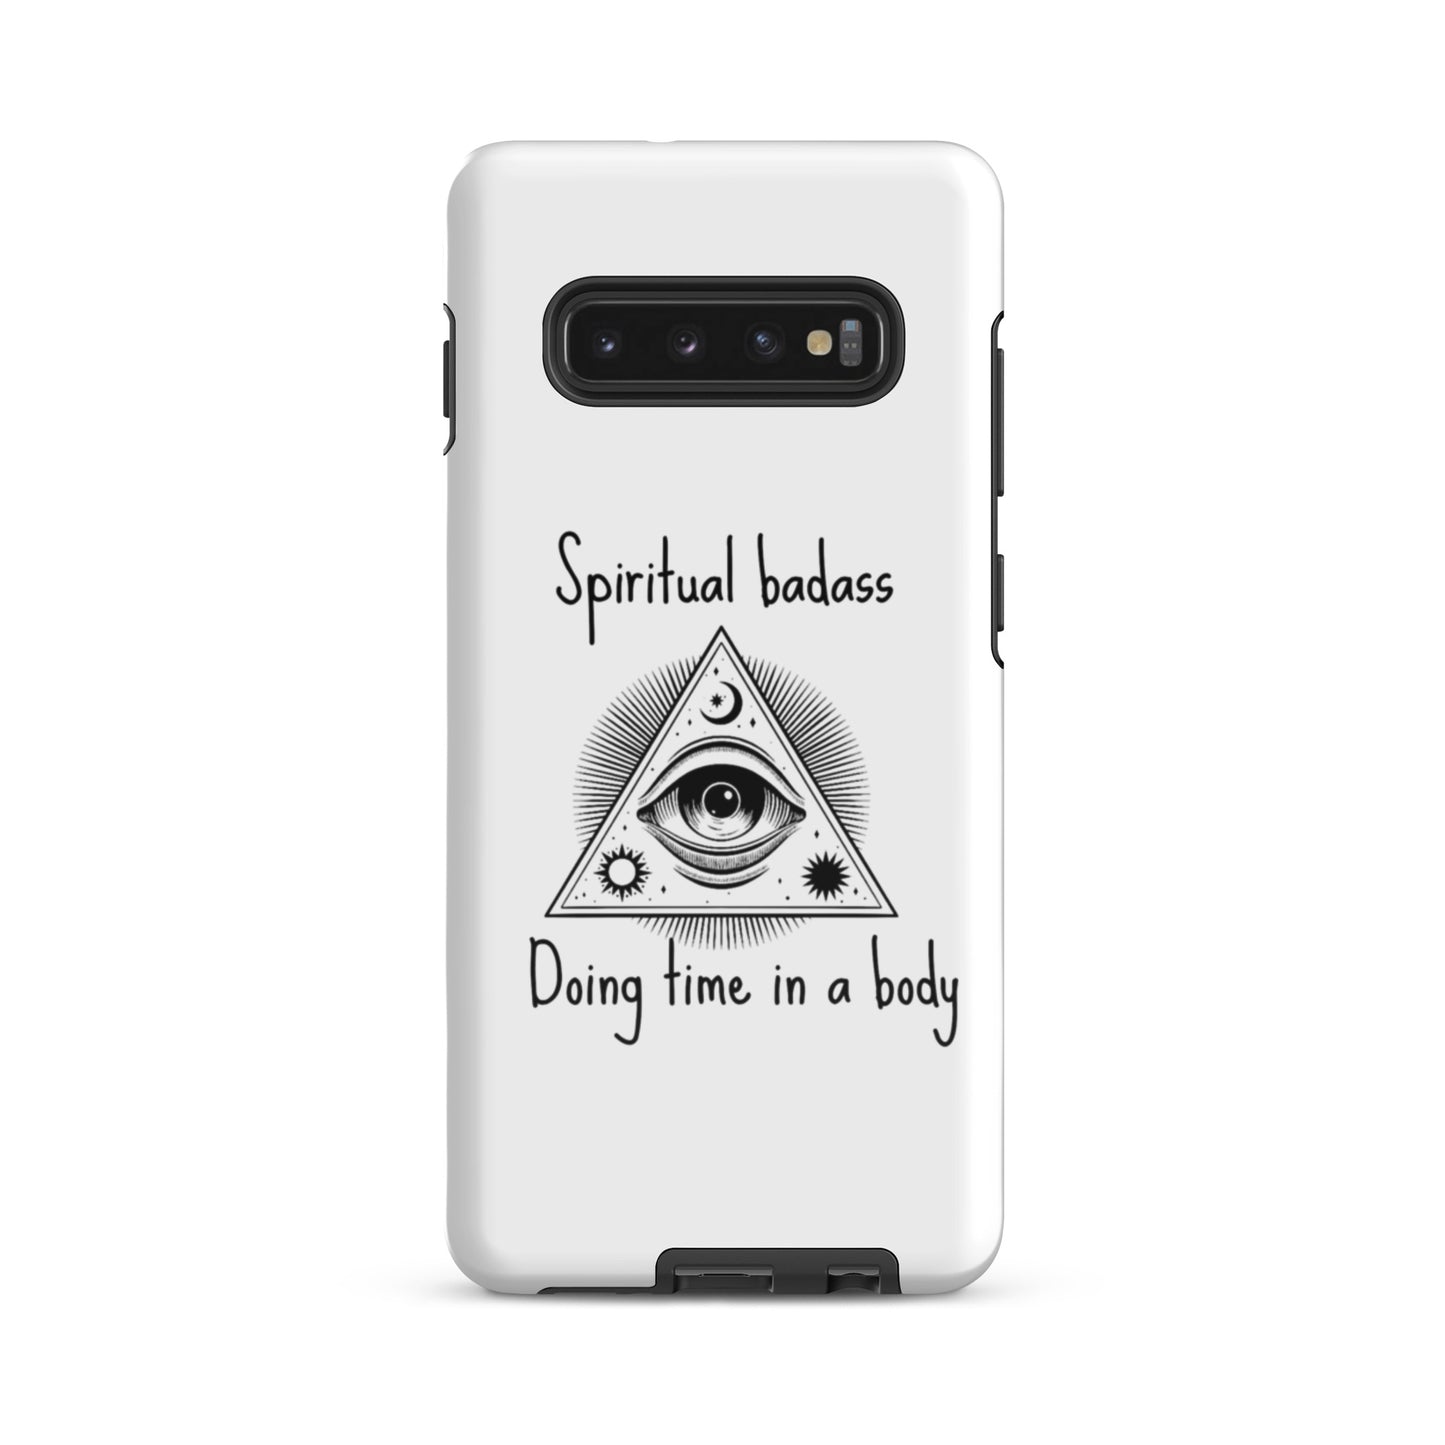 Tough case for Samsung® spiritual badass